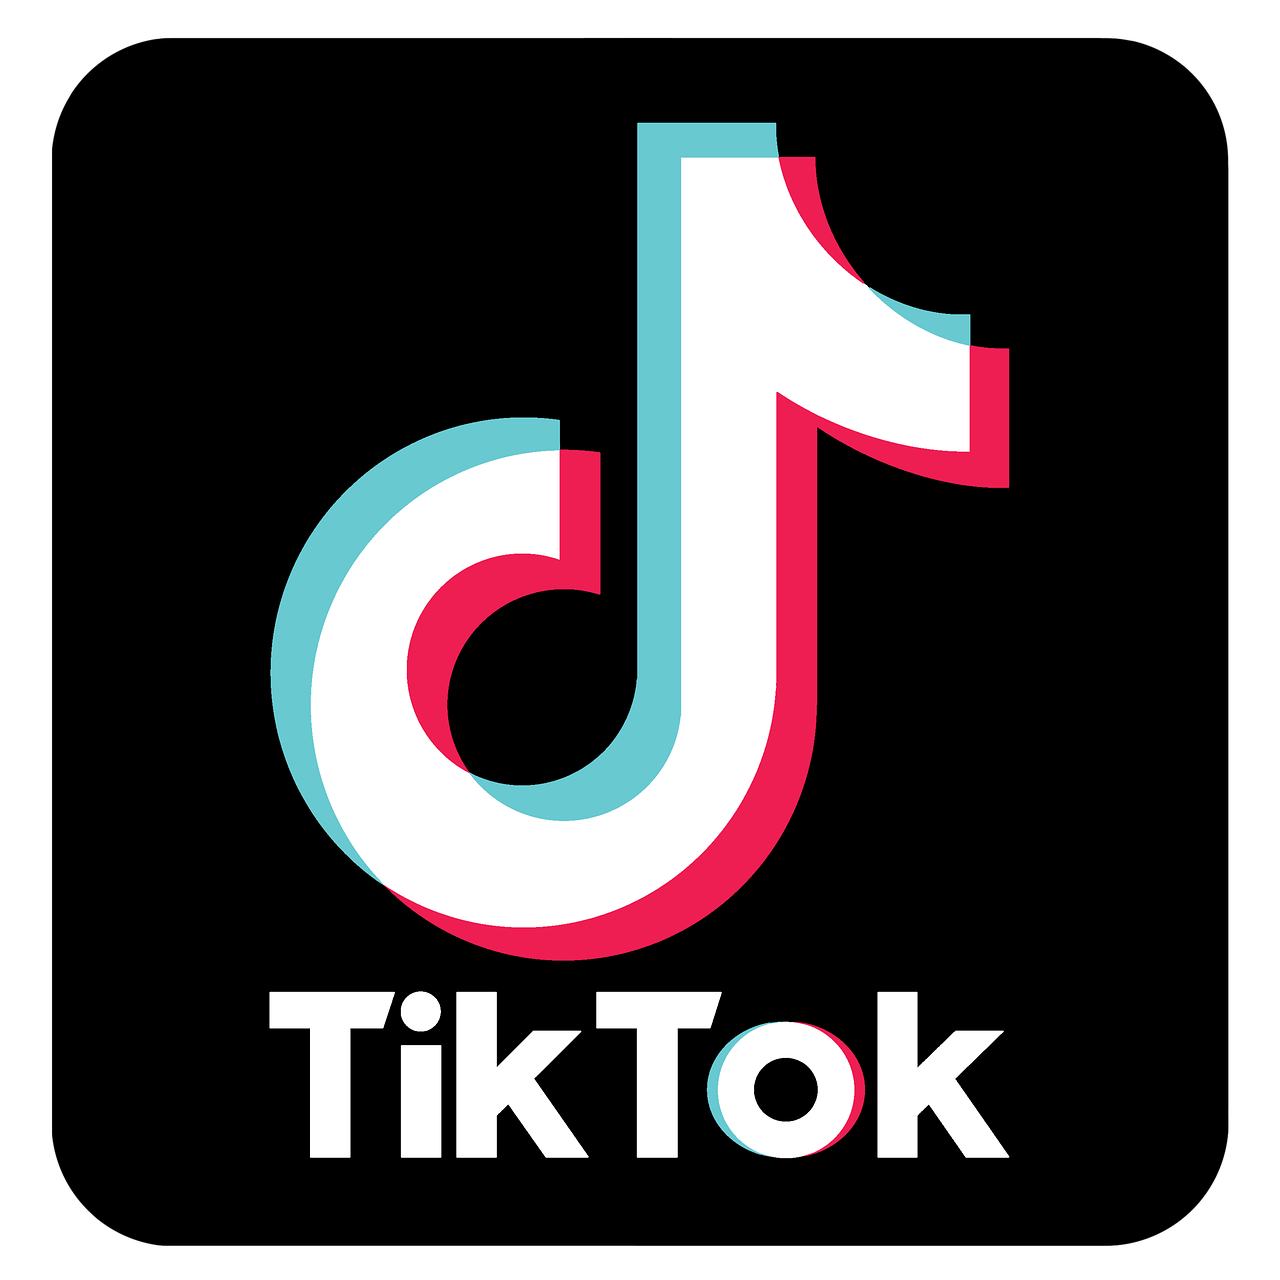 TikTok è un grande diffusore di disinformazione